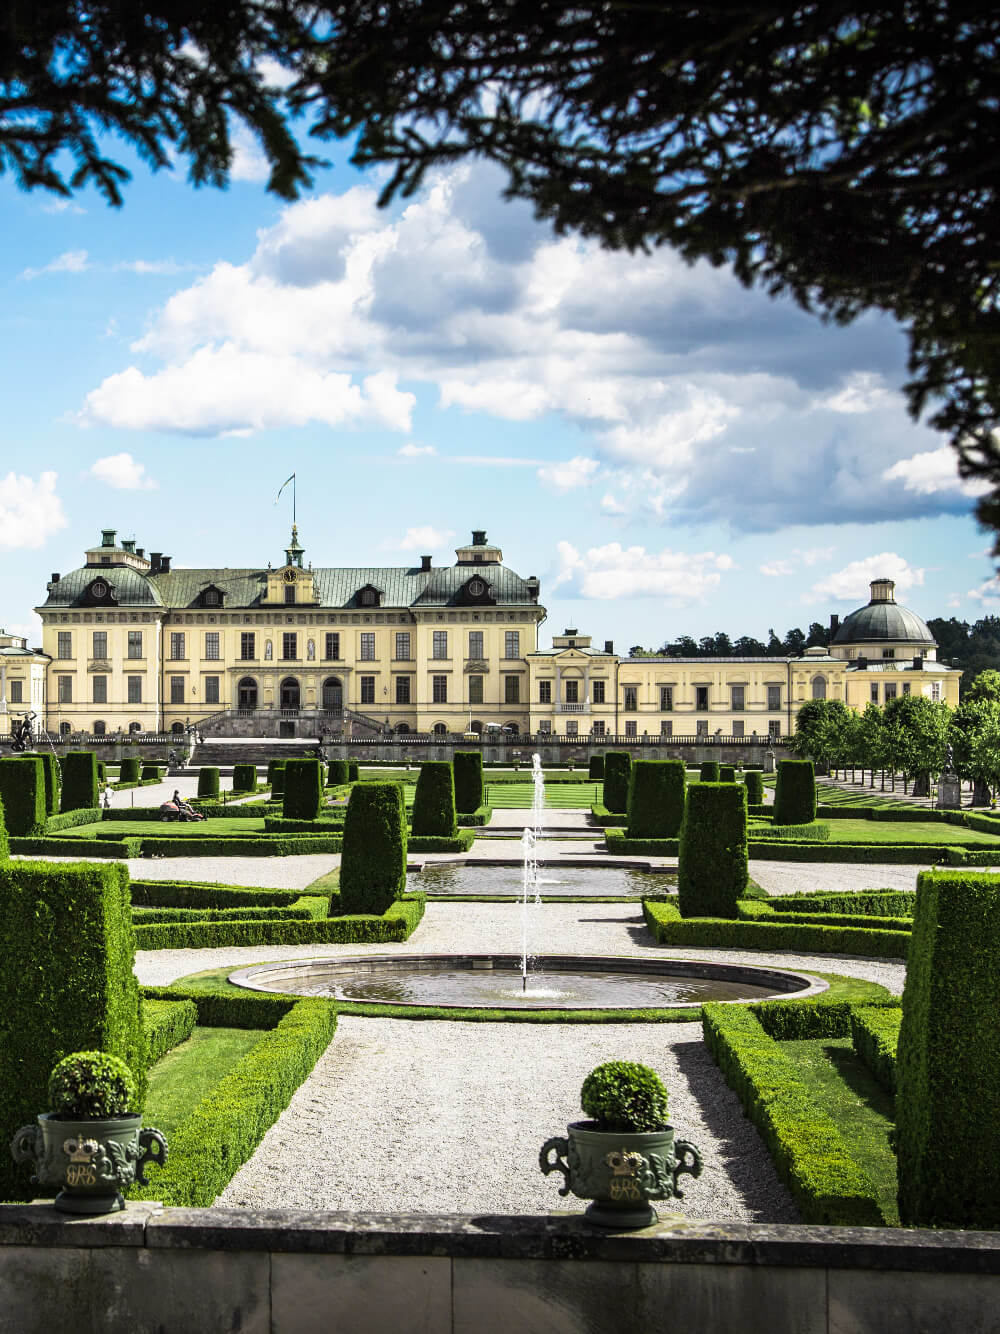 Drottningholm Palace in central Stockholm.